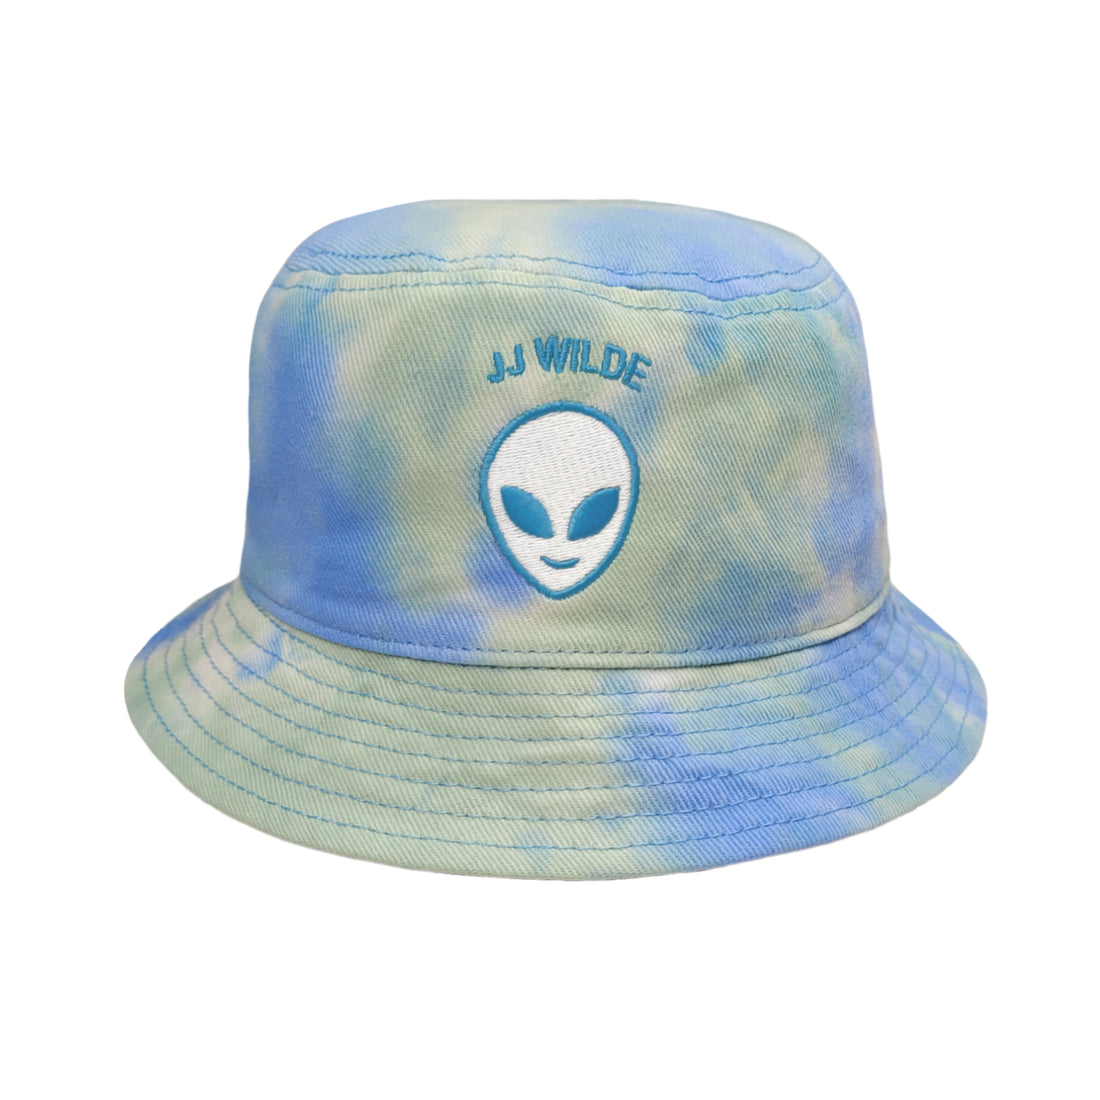 JJ Wilde - Alien Bucket Hat